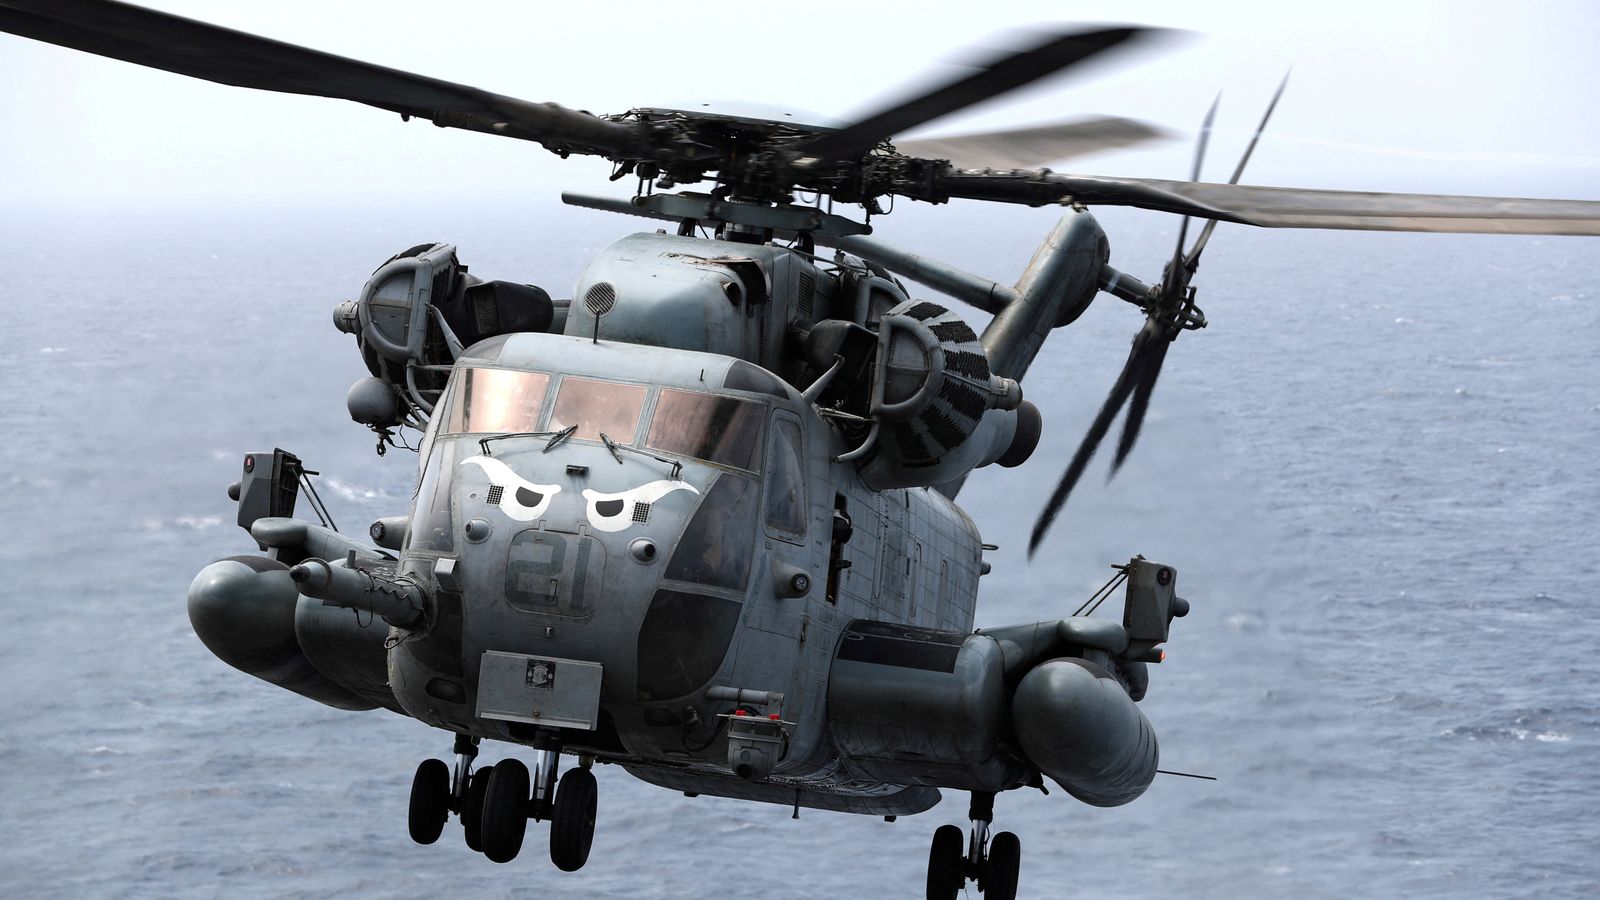 Петима американски морски пехотинци загинаха при катастрофа с хеликоптер в Калифорния по време на буря